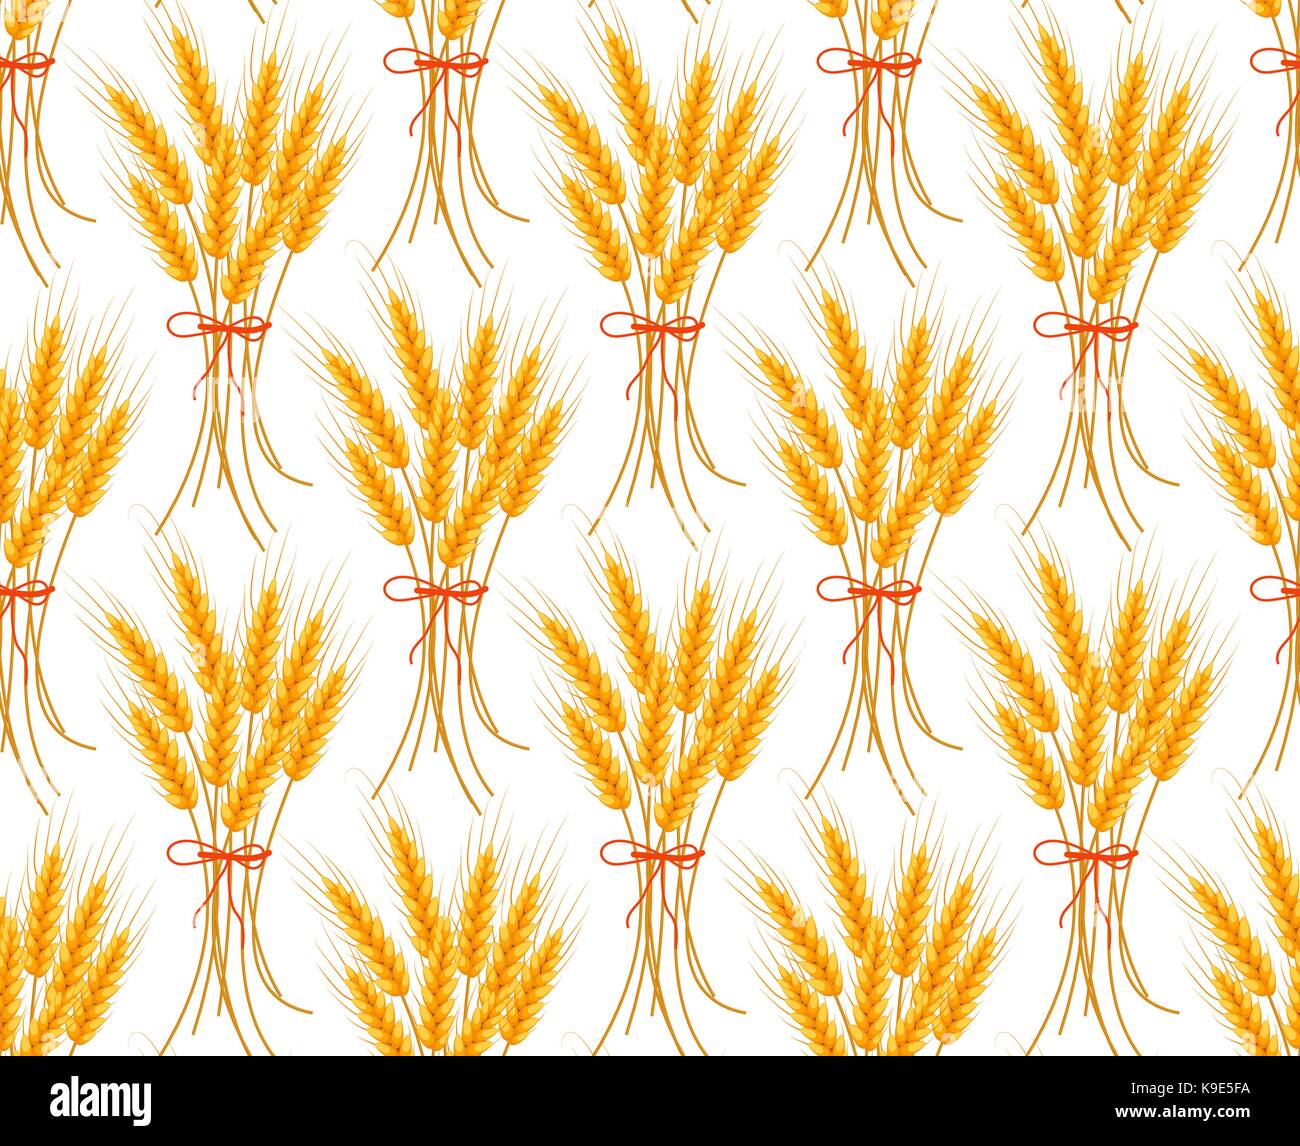 Weizen nahtlose Muster. Ährchen wiederholende Textur, endlose Hintergrund. Vector Illustration. Stock Vektor